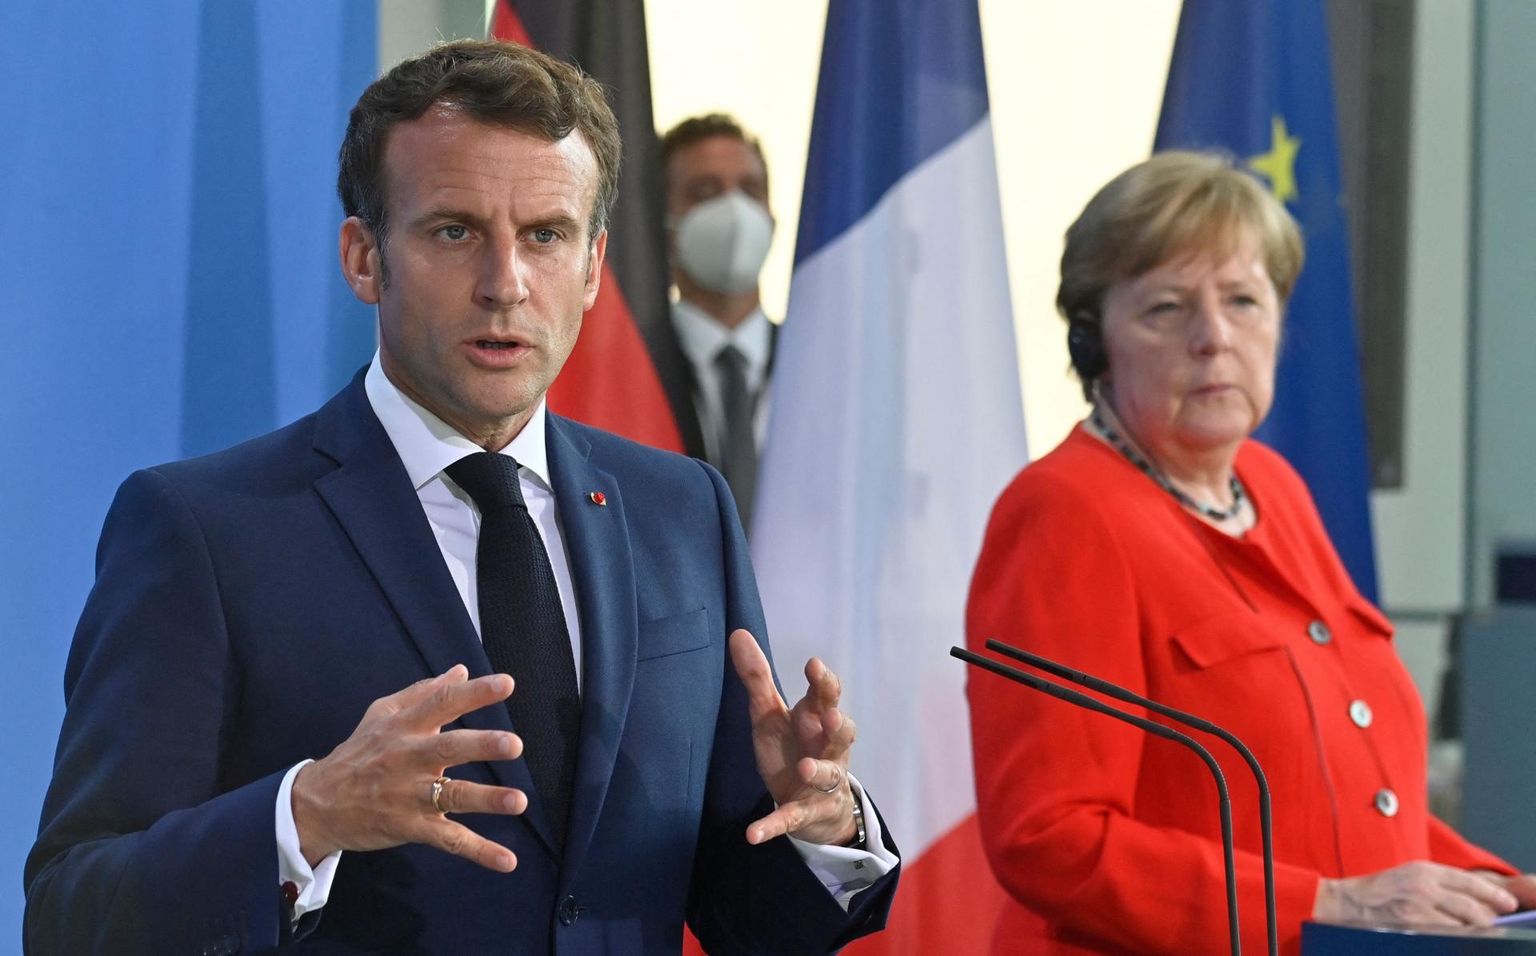 Saksamaa kantsler Angela Merkel ja Prantsuse president Emmanuel Macron tegid ettepaneku alustada Venemaaga taas dialoogi.